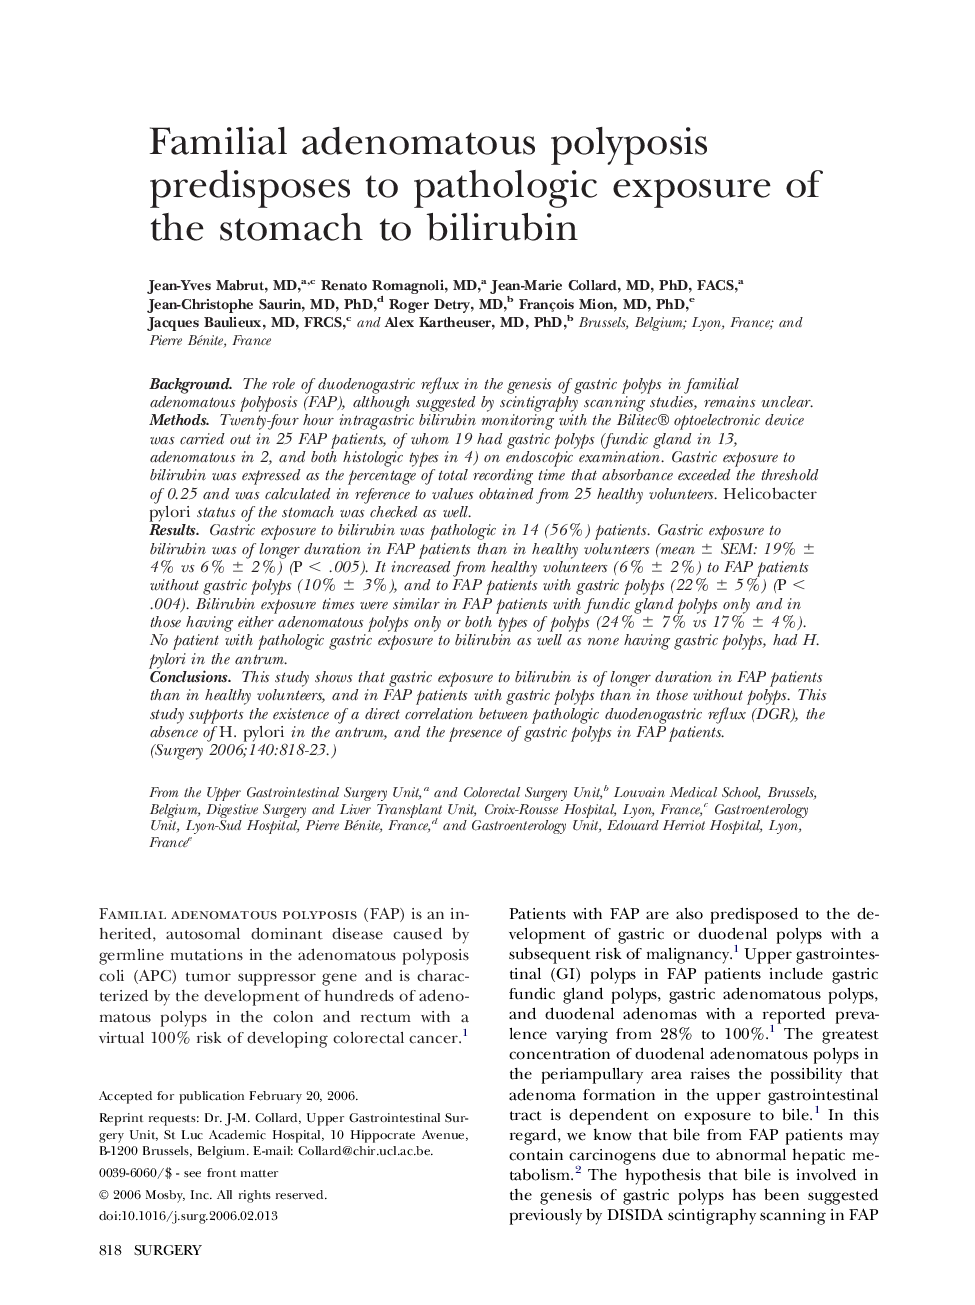 Familial adenomatous polyposis predisposes to pathologic exposure of the stomach to bilirubin